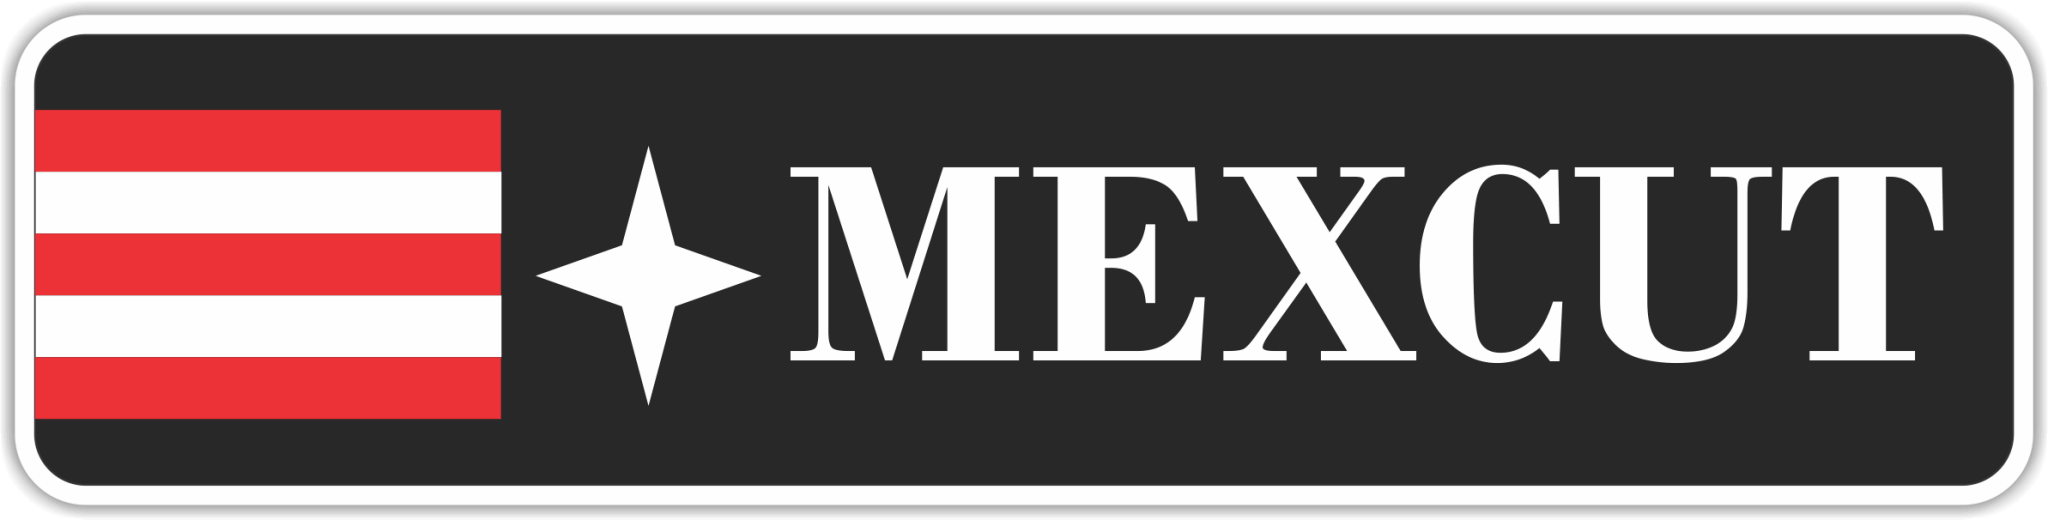 MEXCUT - ElLugarDelChef.com